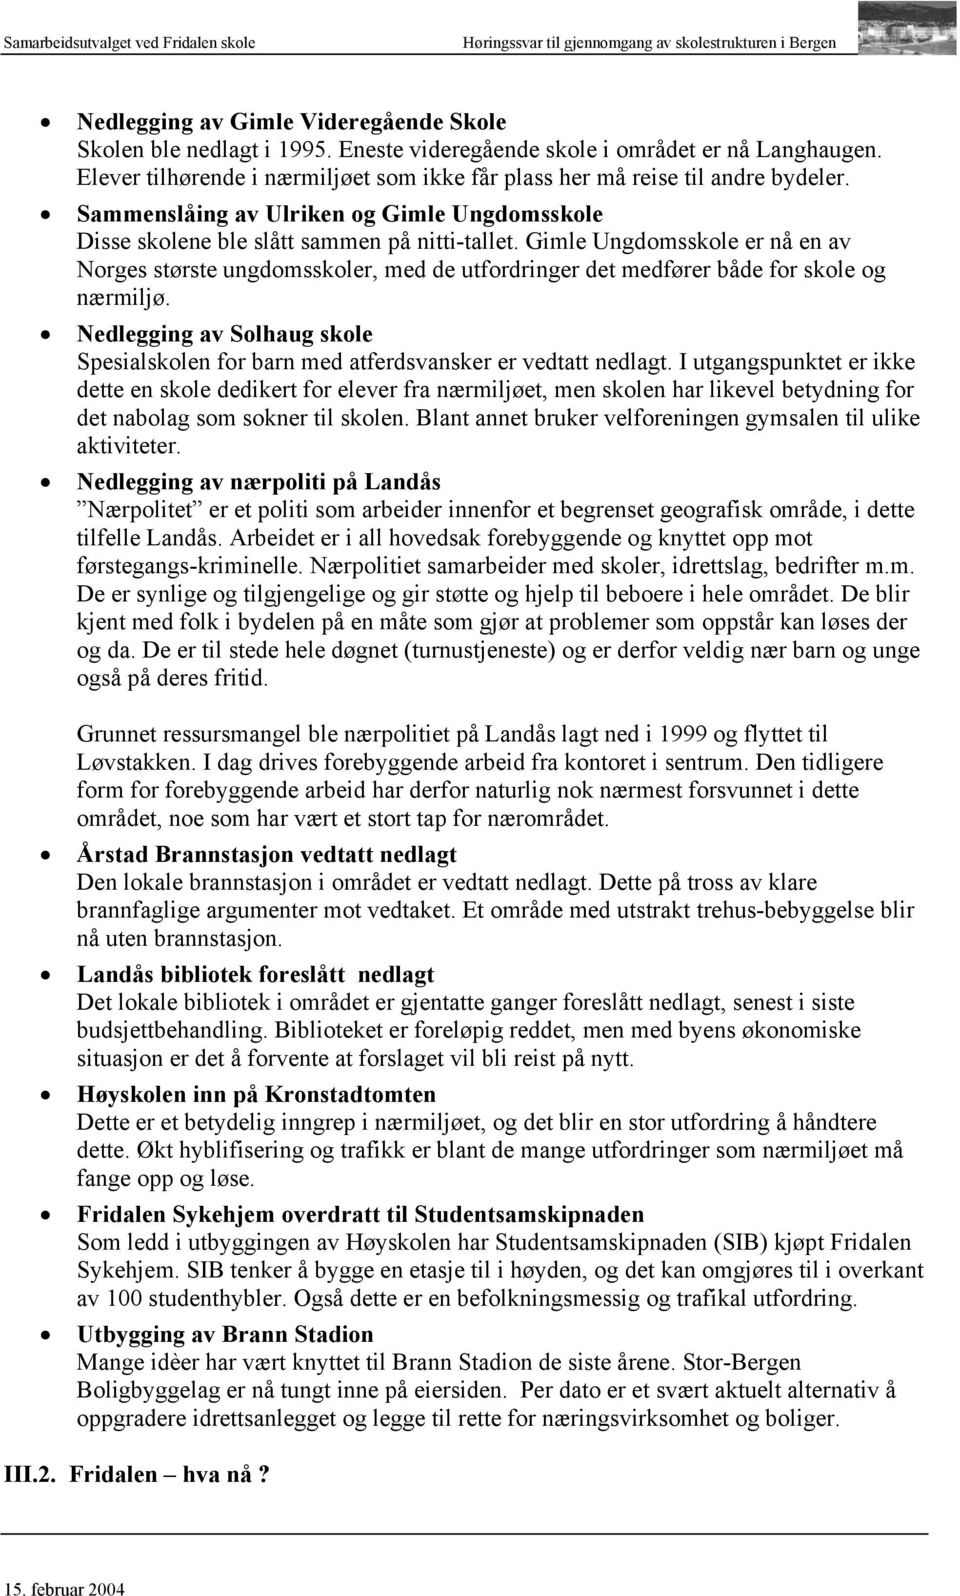 Gimle Ungdomsskole er nå en av Norges største ungdomsskoler, med de utfordringer det medfører både for skole og nærmiljø.